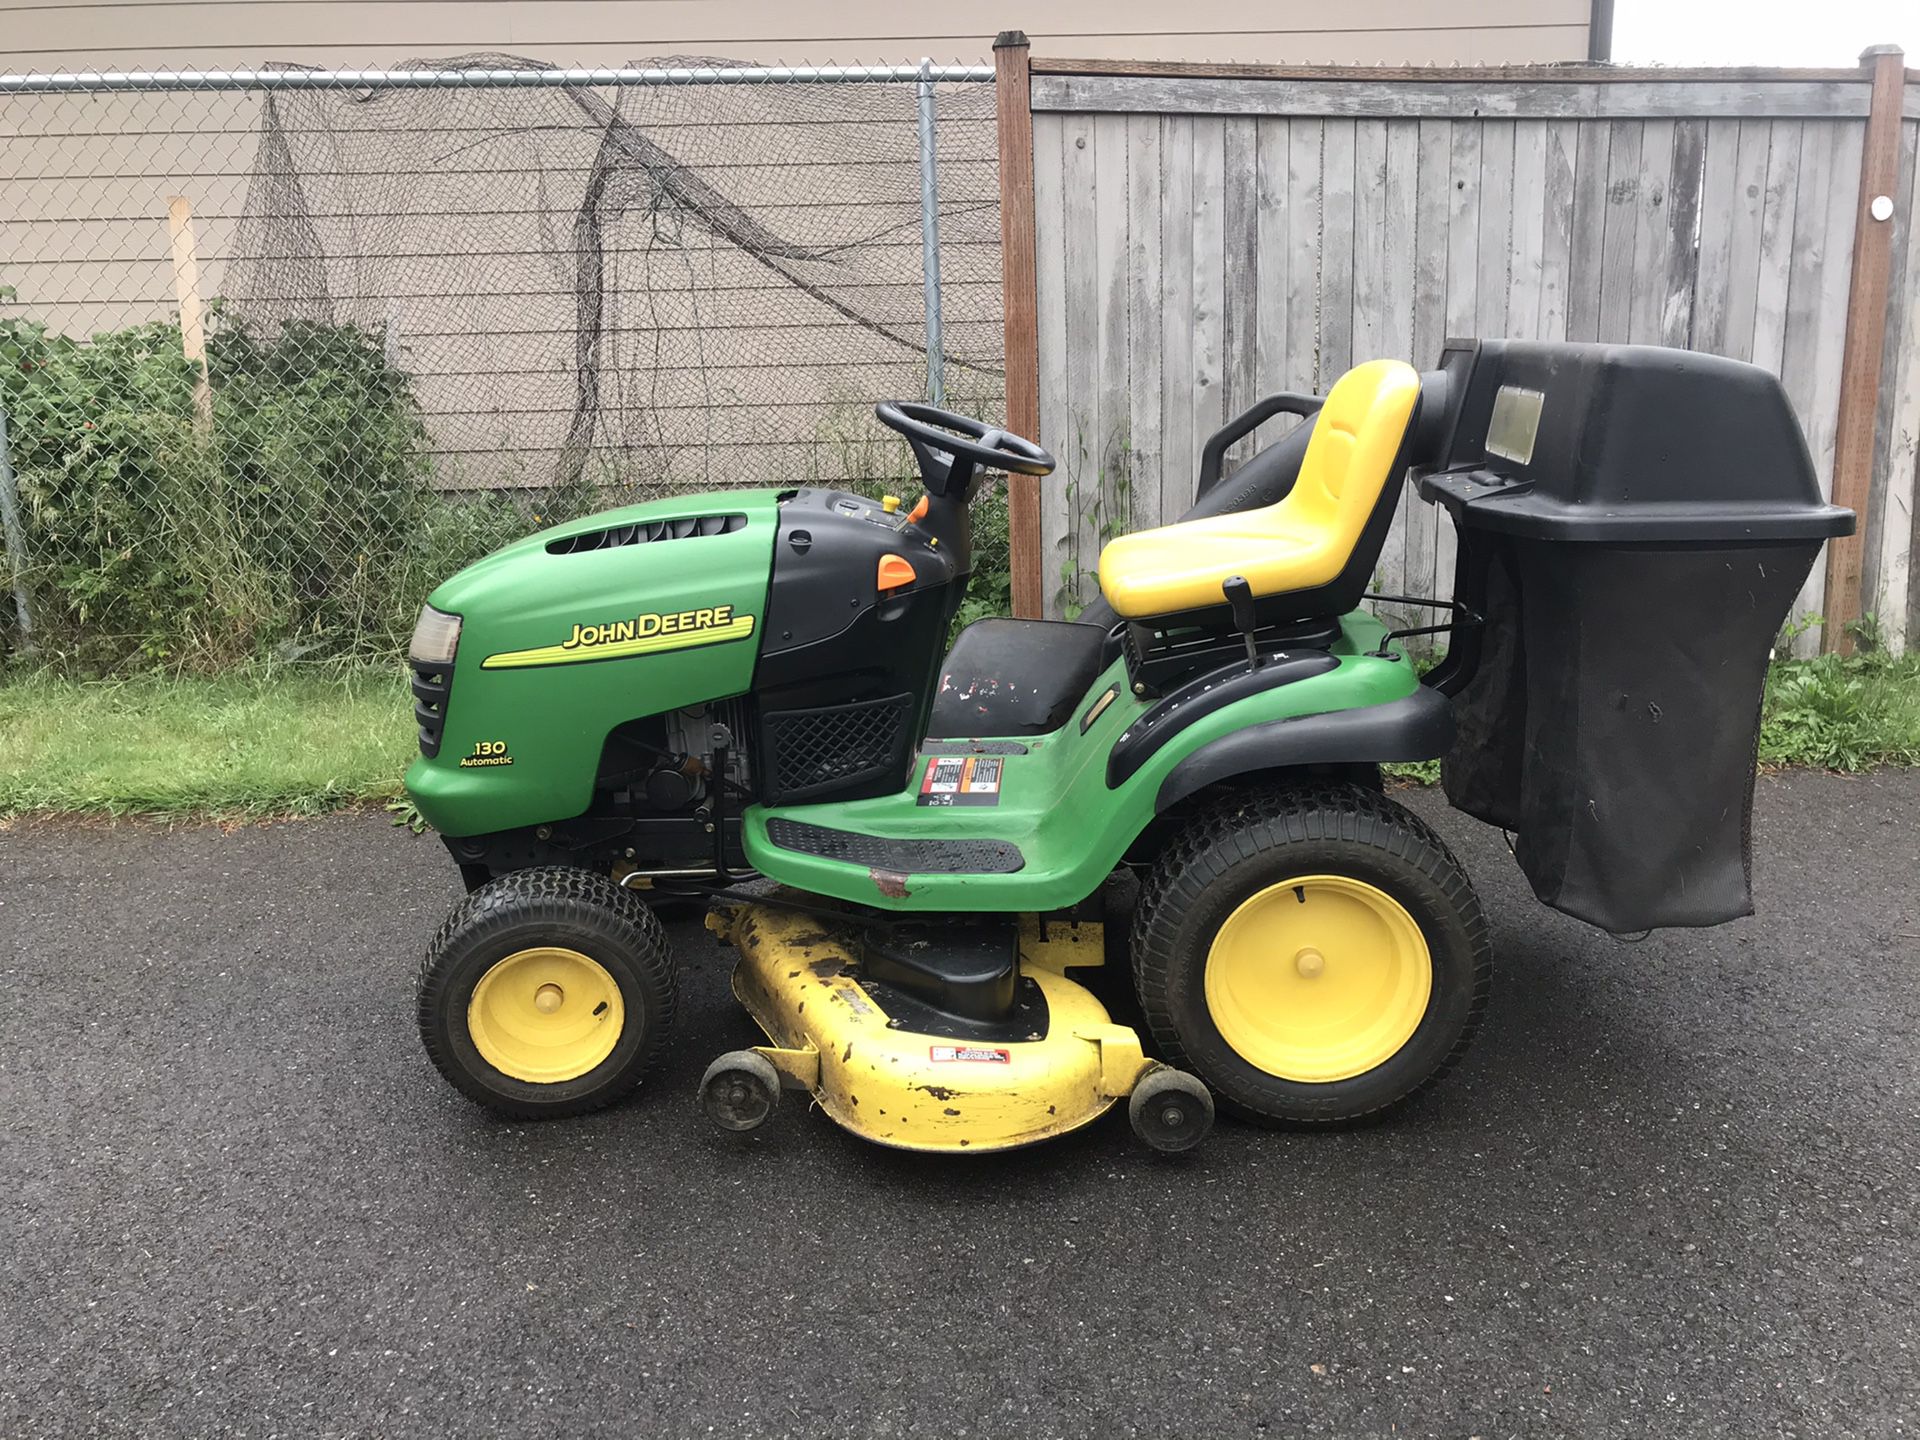 2005 John Deere L130 Hydrostatic lawn mower garden tractor